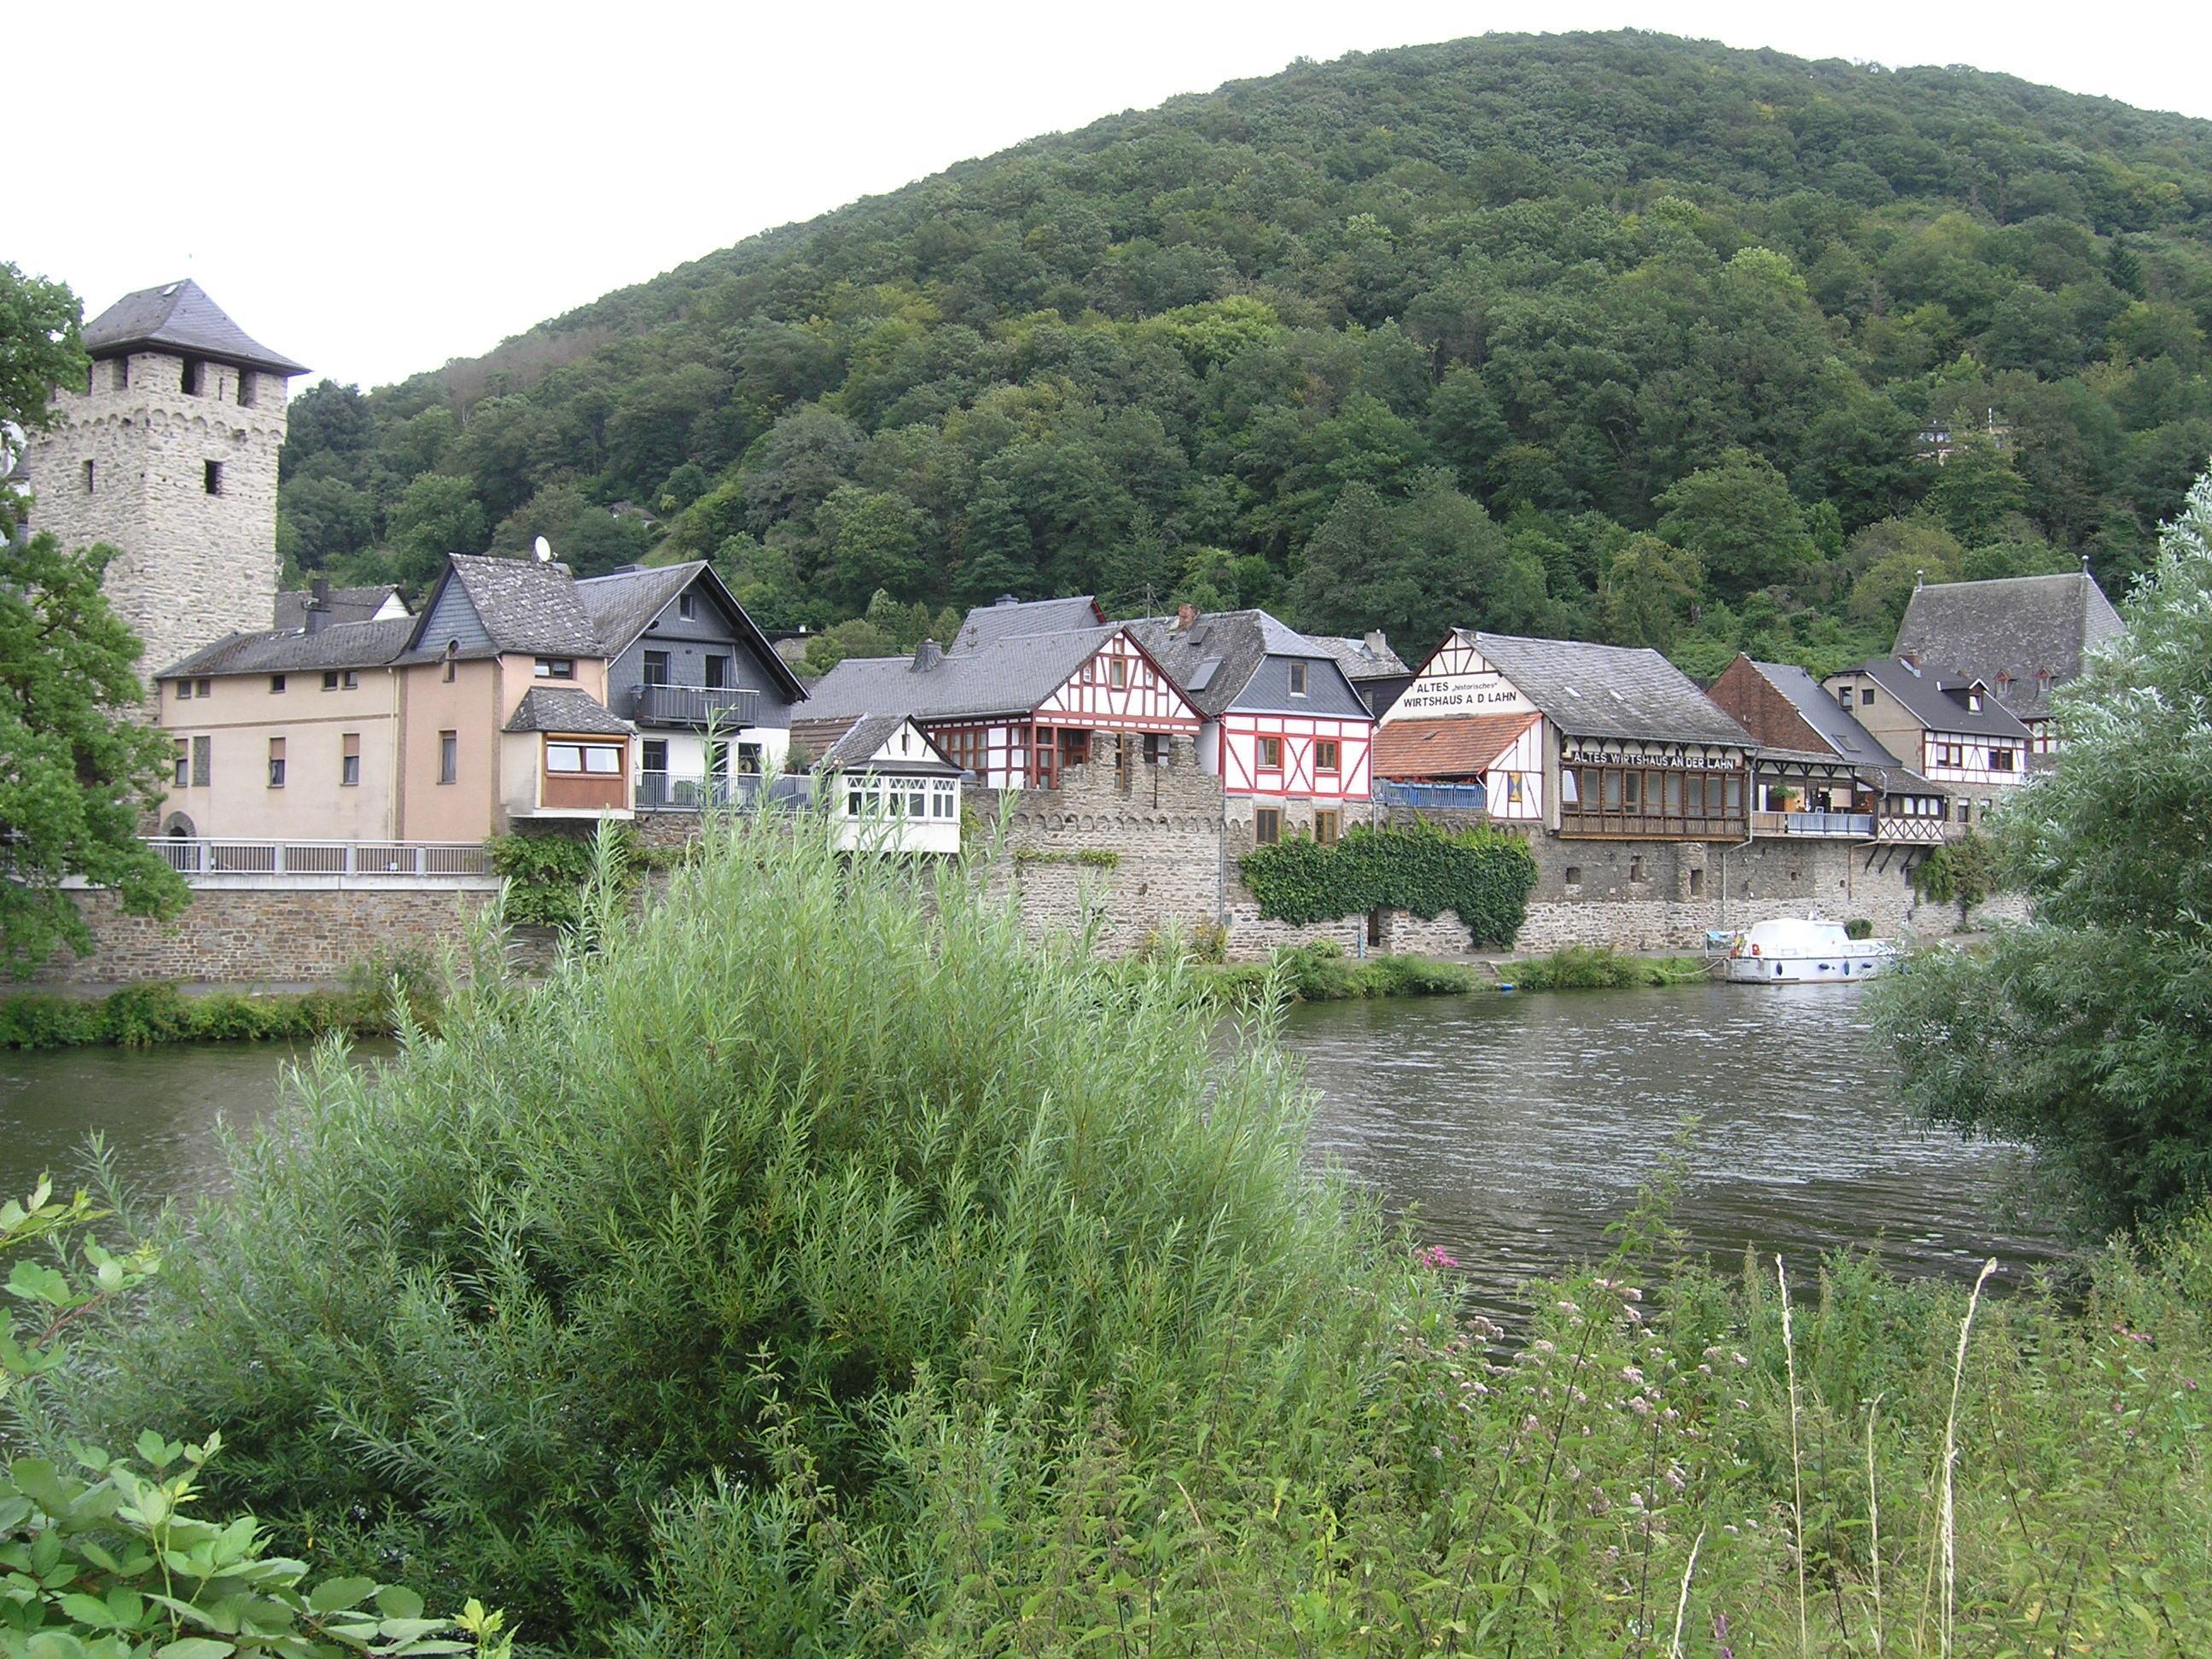 View of Dausenau